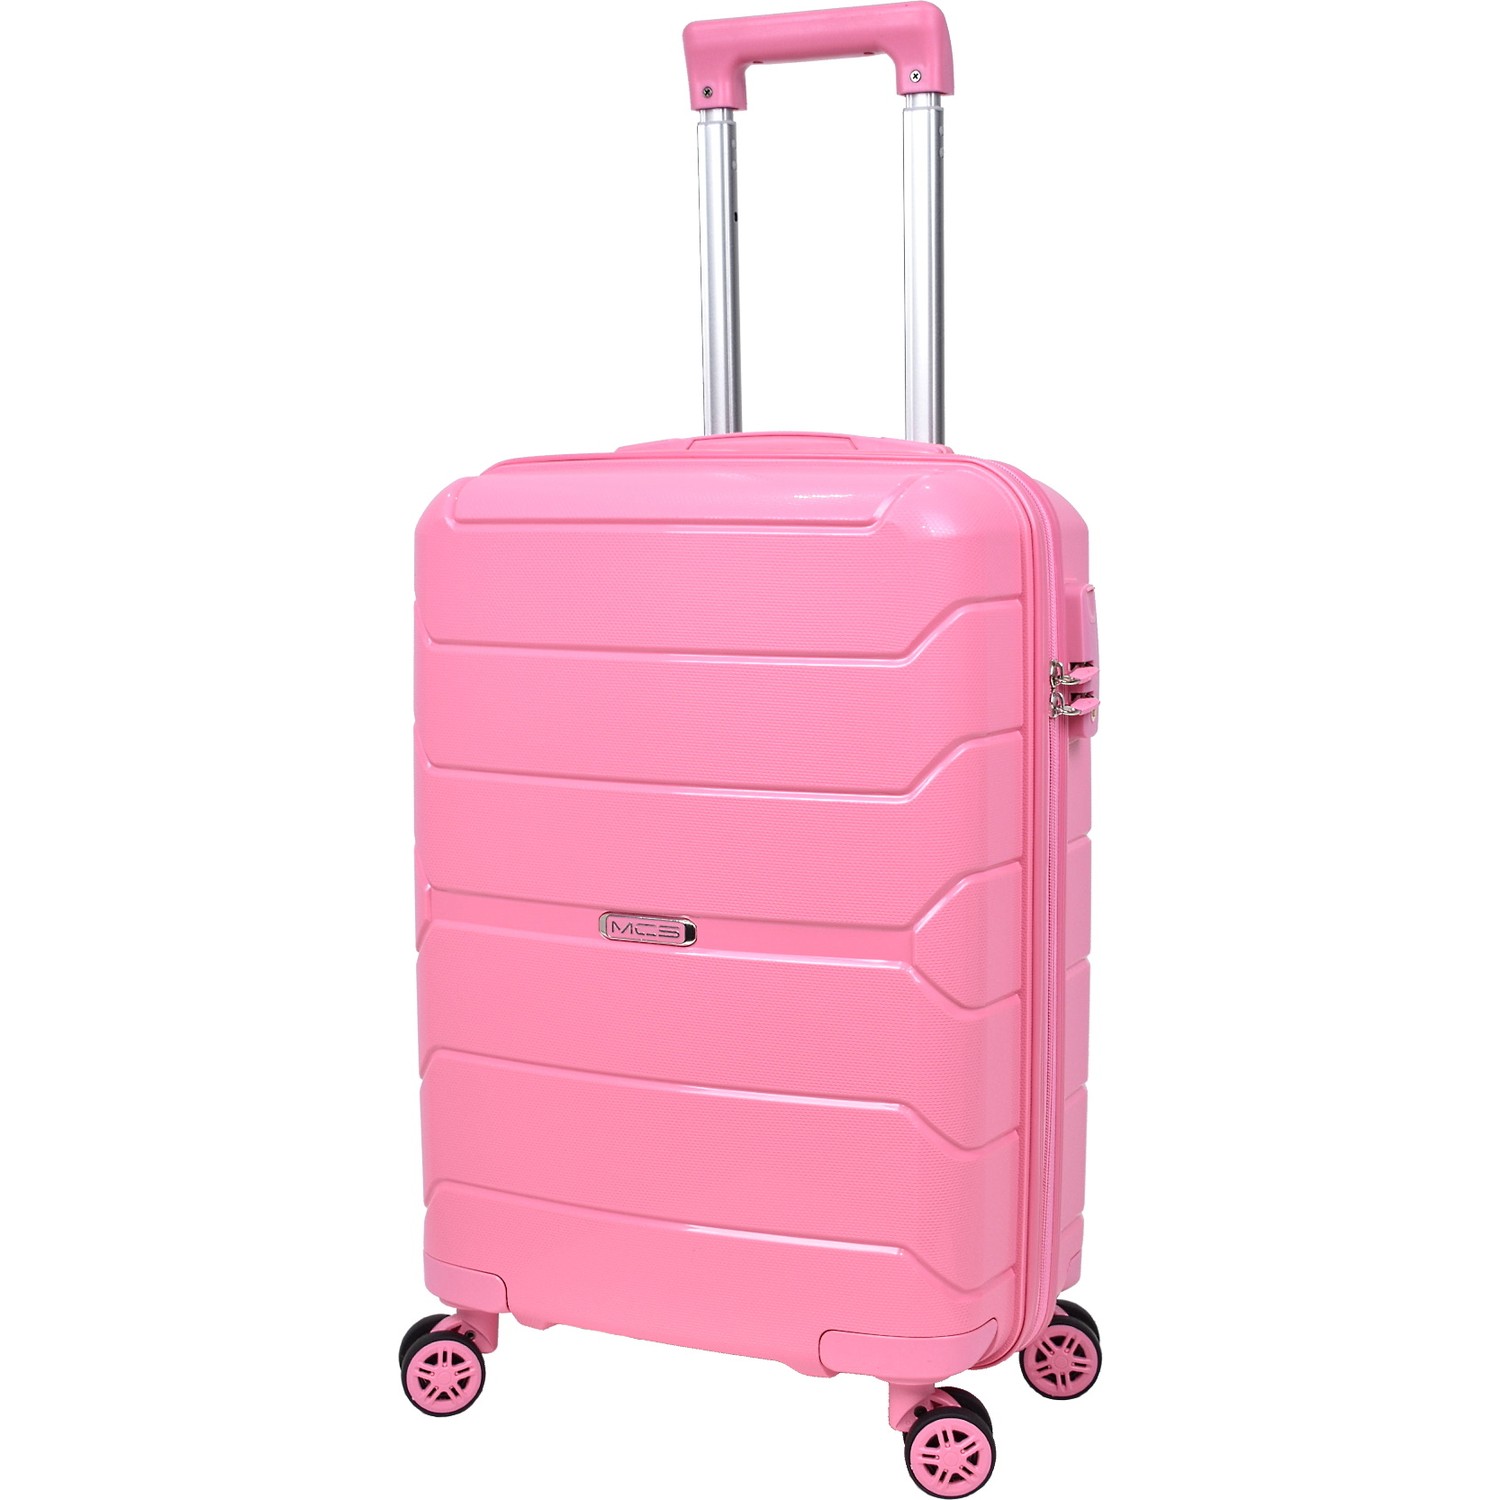 Маленький чемодан для ручьной клади из полипропилена MCS V366 S PUDRA! Для 8-10 кг! - 5